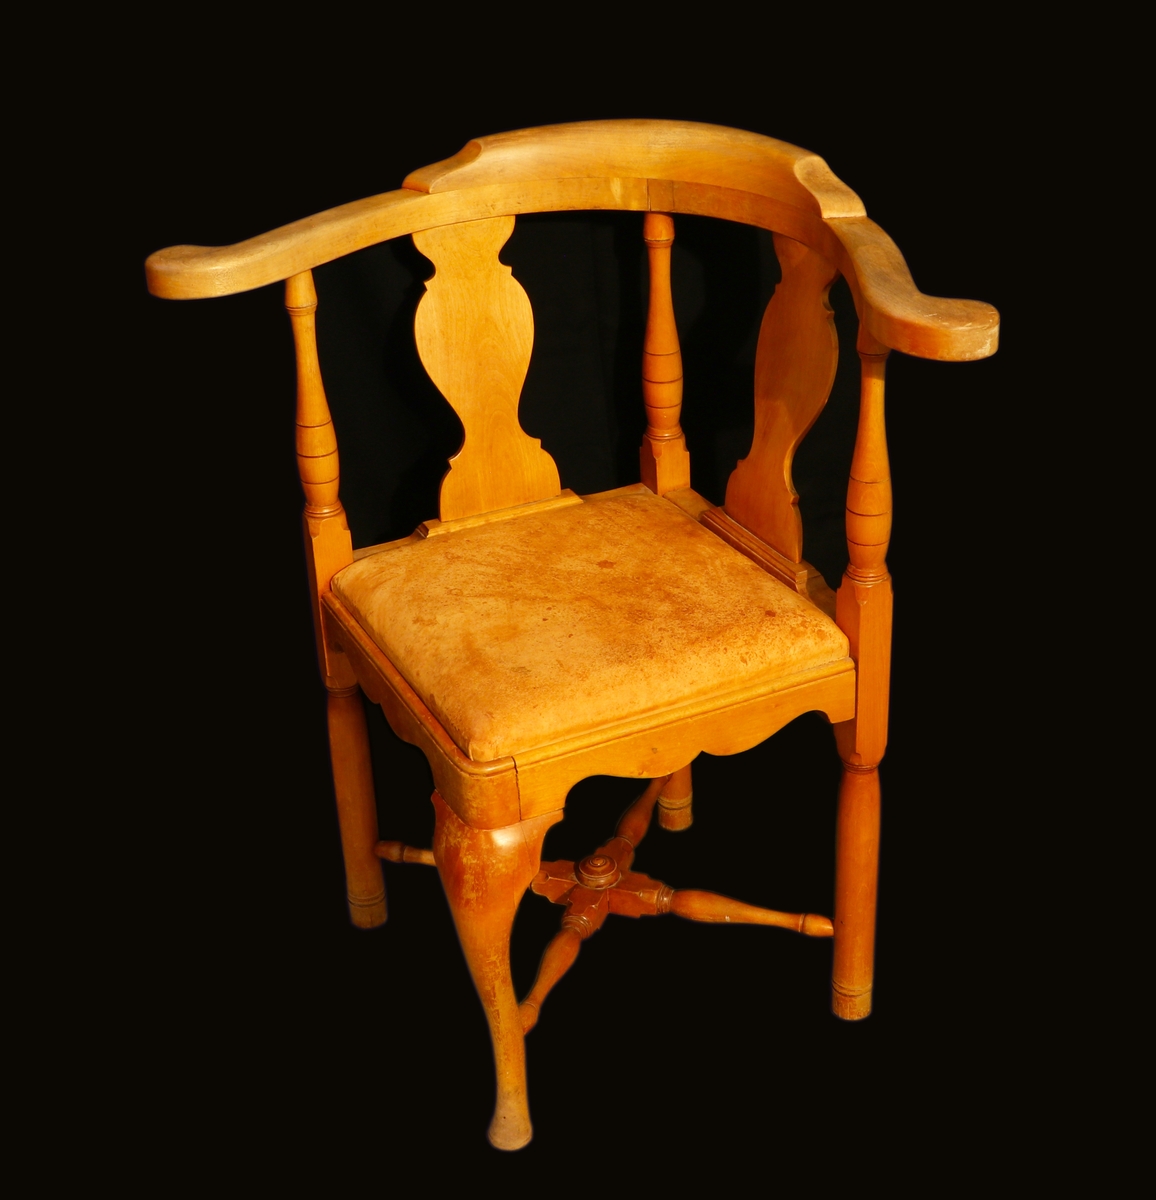 Puderstol förmodligen i björk. Fyrkantig sits som är vänd så att ett hörn är vänt framåt. Ryggstödet är vinkelgående på två sidor med svarvade ryggstolpar och mittståndare och balusterformade ryggbrickor. Främre benet är svängt medan de andra är raka, svarvade krysslåar förbinder benen. Profilerad sarg. Sitsen är löstagbar och stoppad, klädd i skinn. På undersidan ett blått tyg där tygerna är nitade.